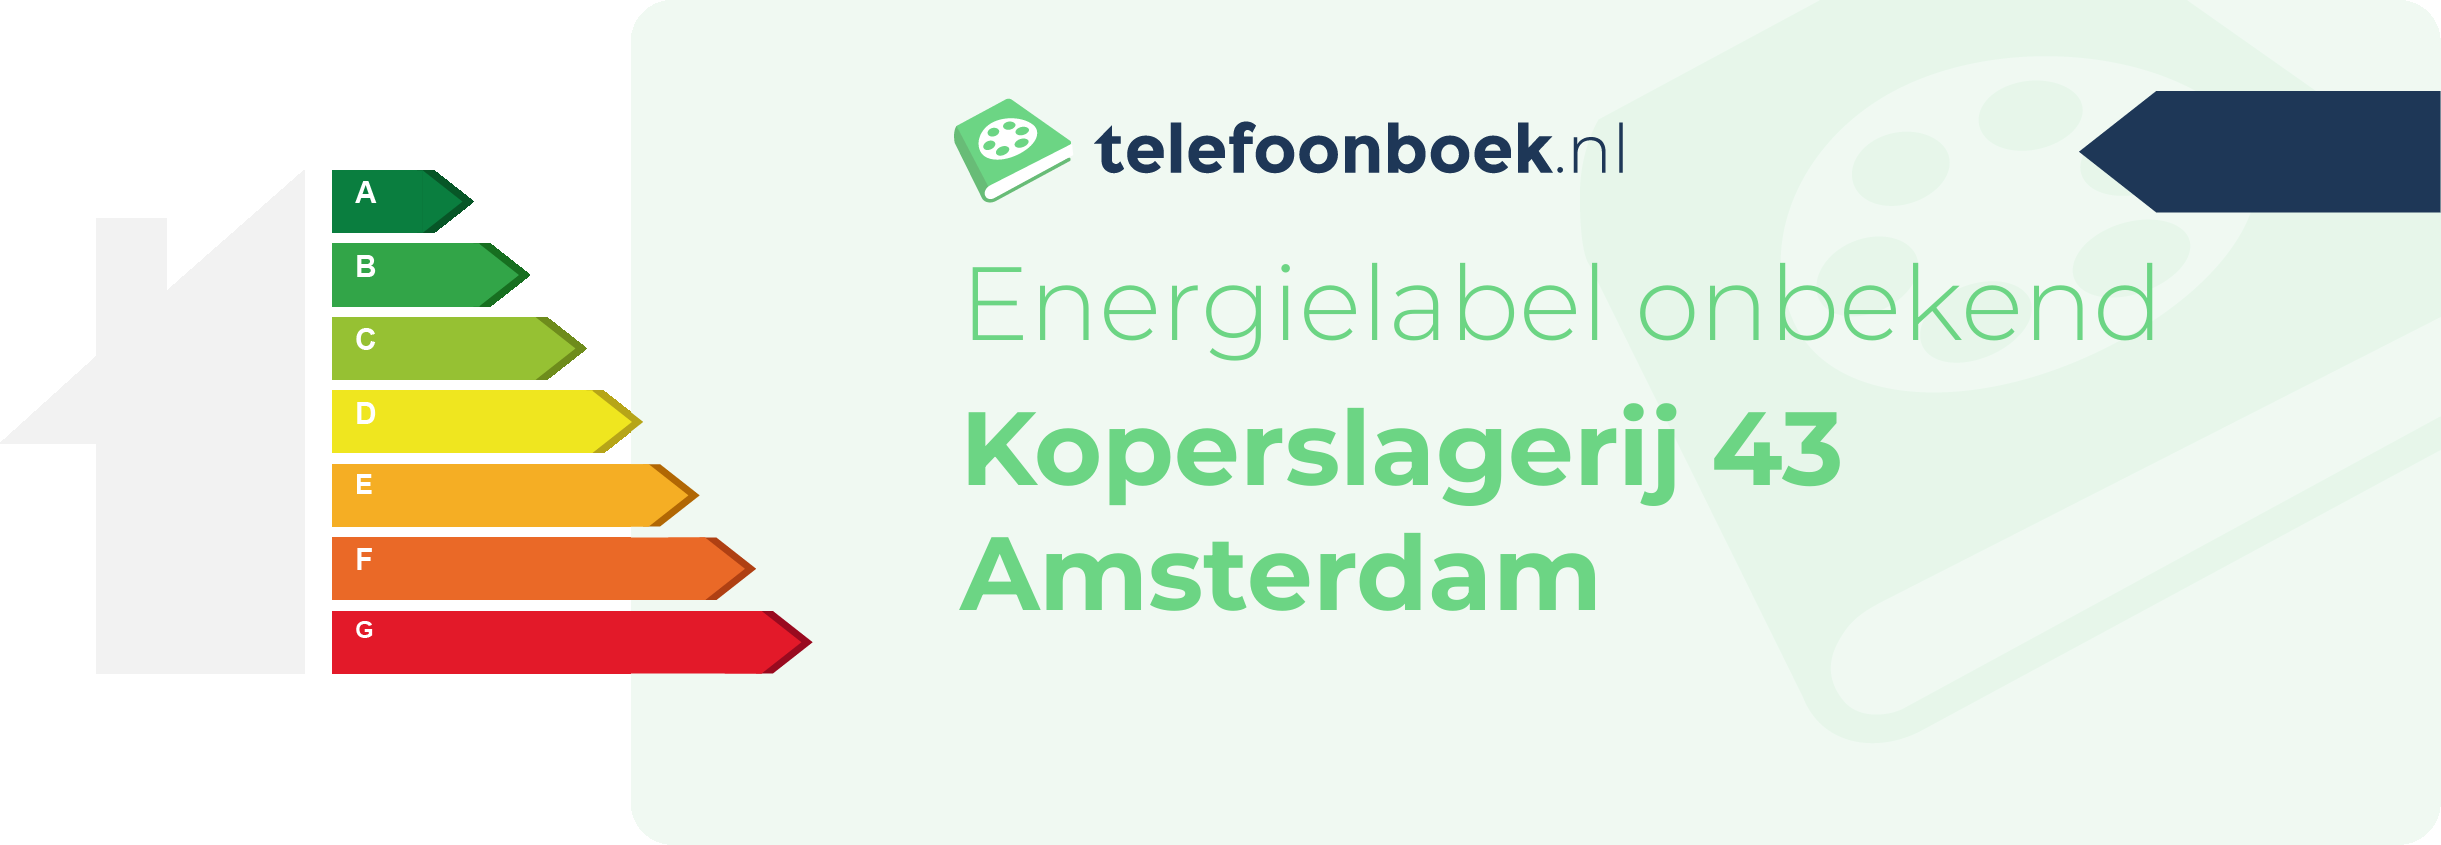 Energielabel Koperslagerij 43 Amsterdam